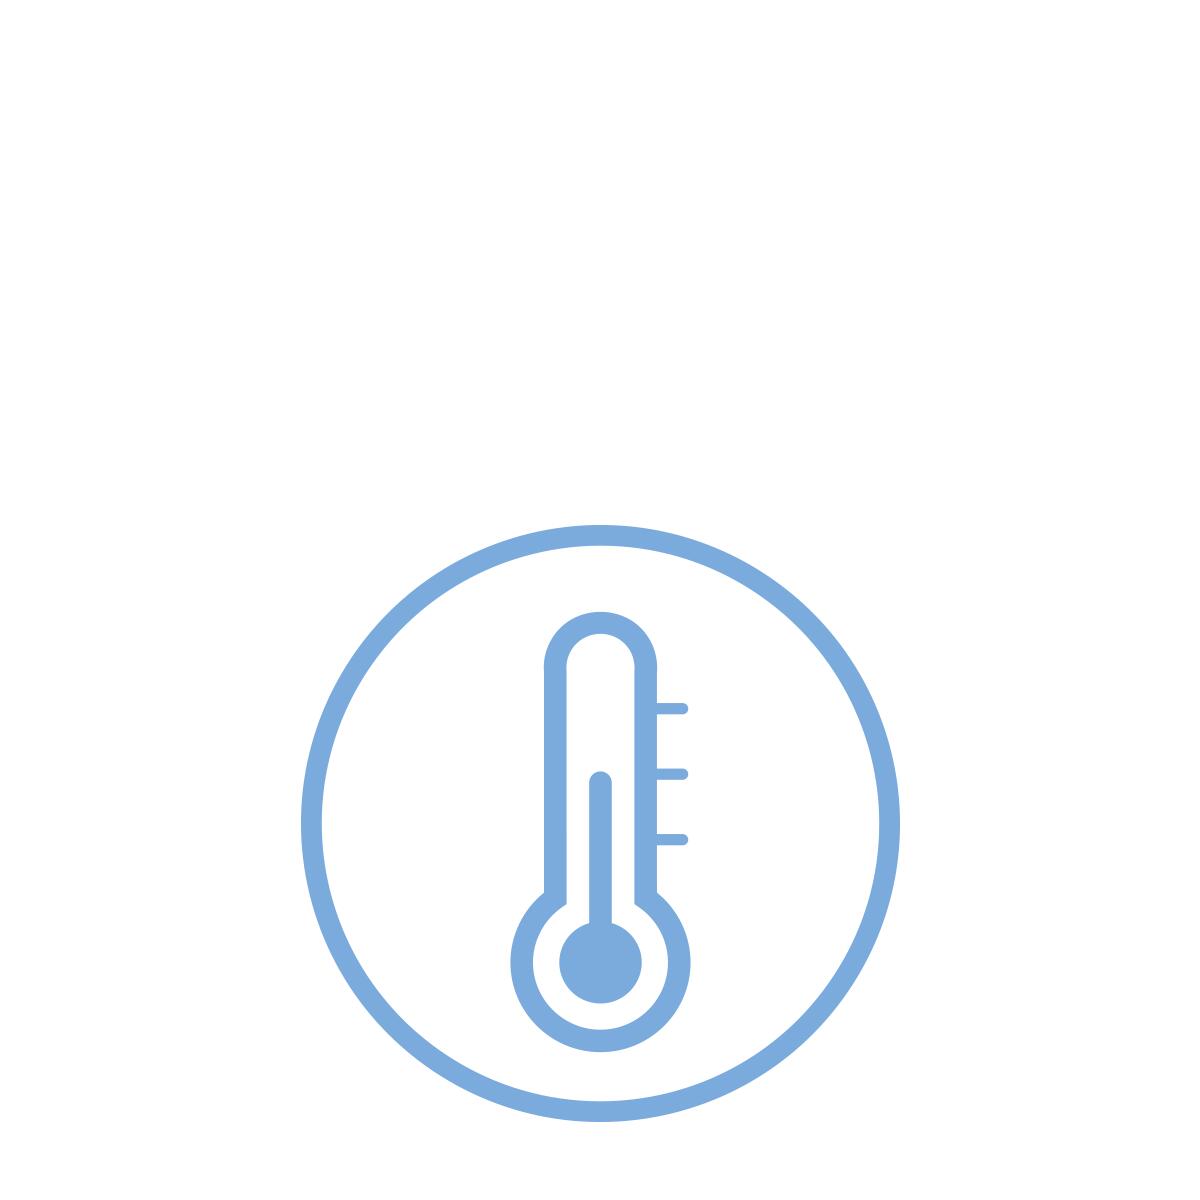 Temperatures variations